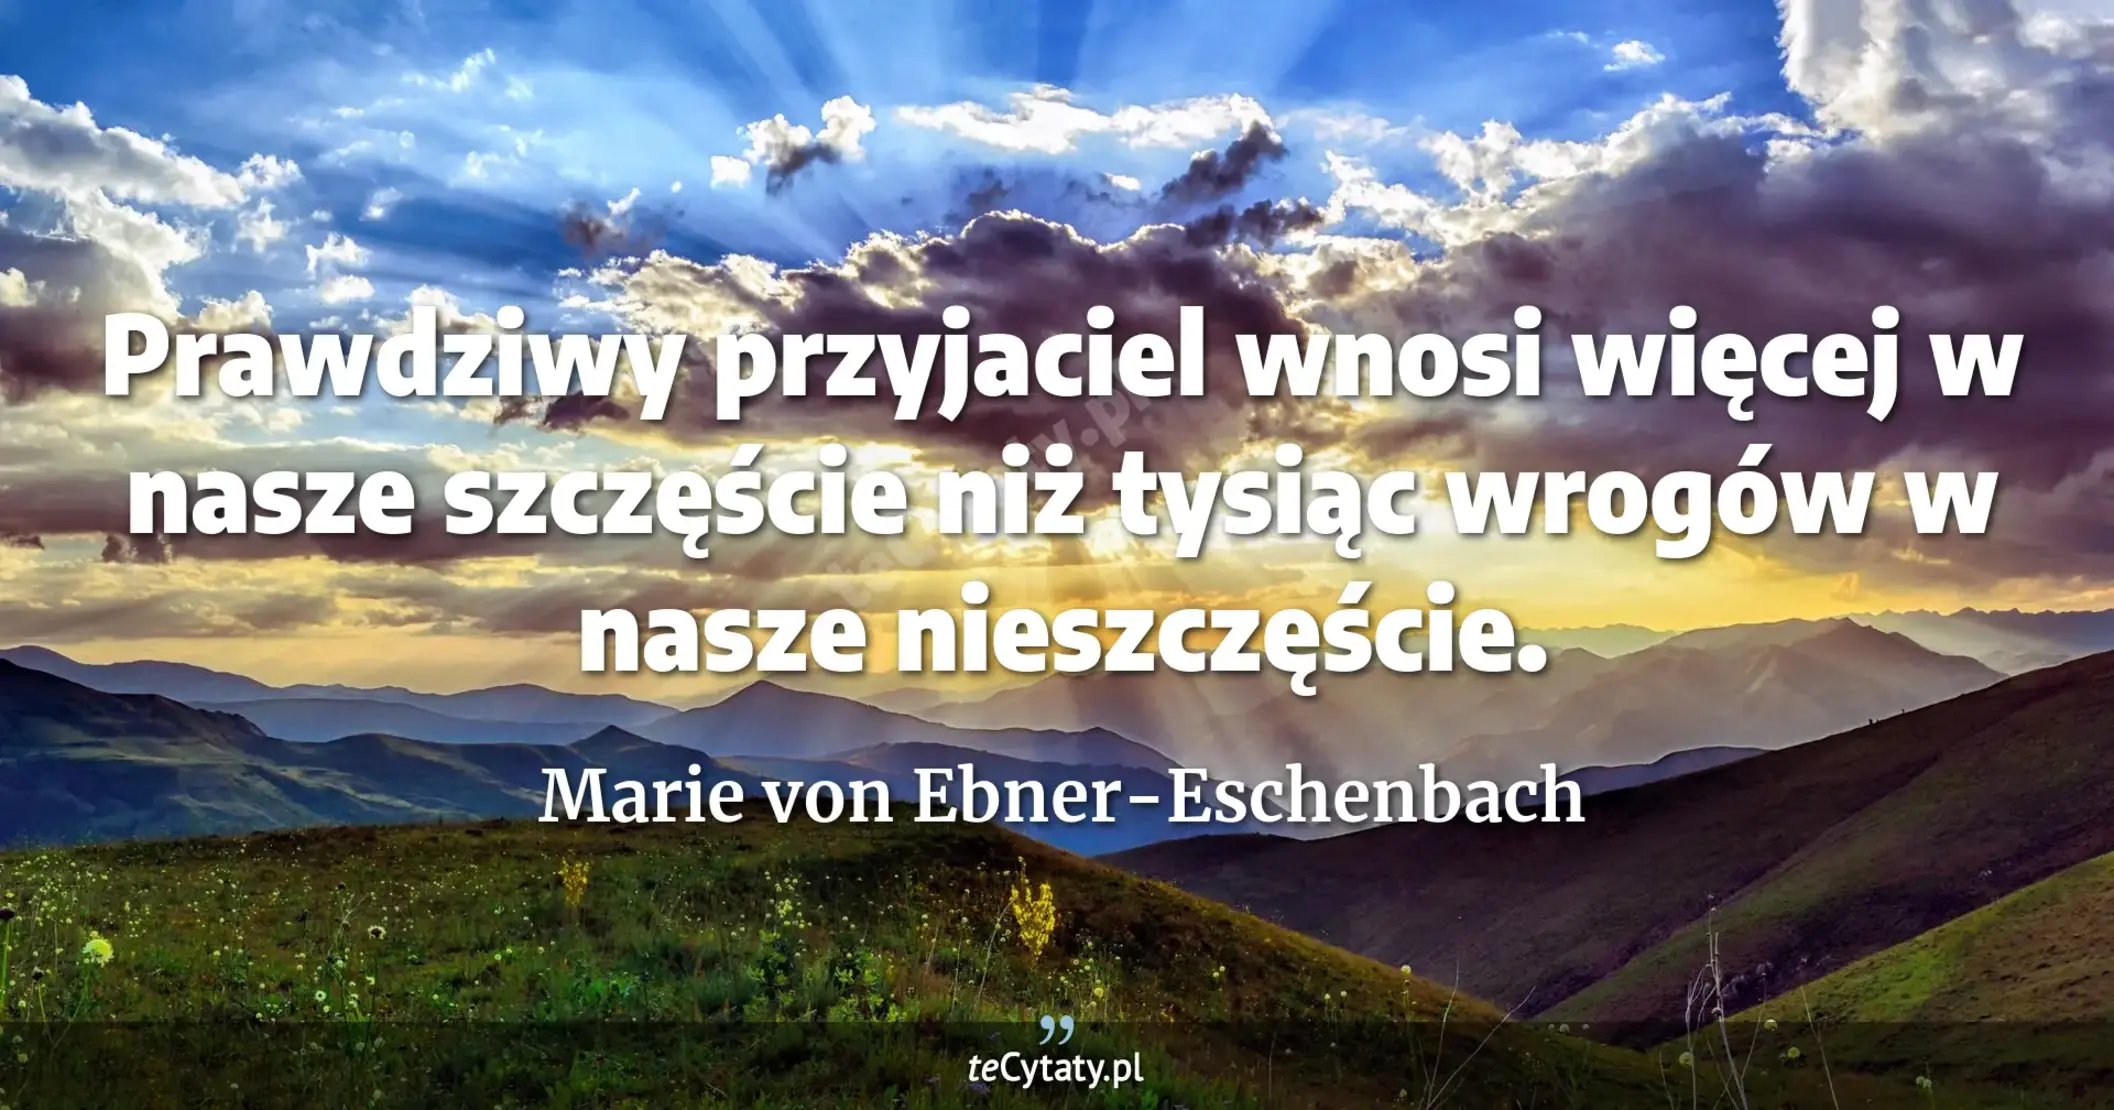 Prawdziwy przyjaciel wnosi więcej w nasze szczęście niż tysiąc wrogów w nasze nieszczęście. - Marie von Ebner-Eschenbach